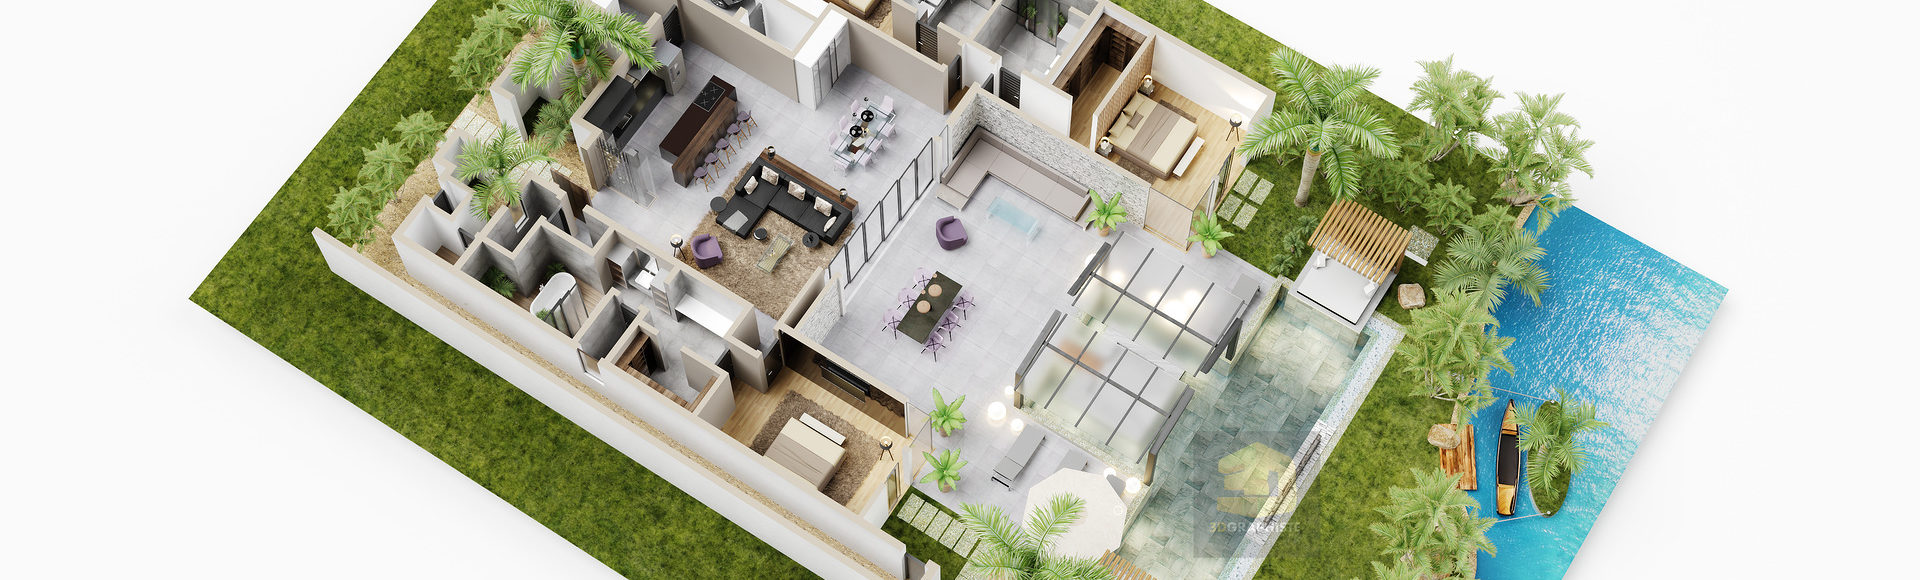 axonométrie - plan 3d villa de luxe